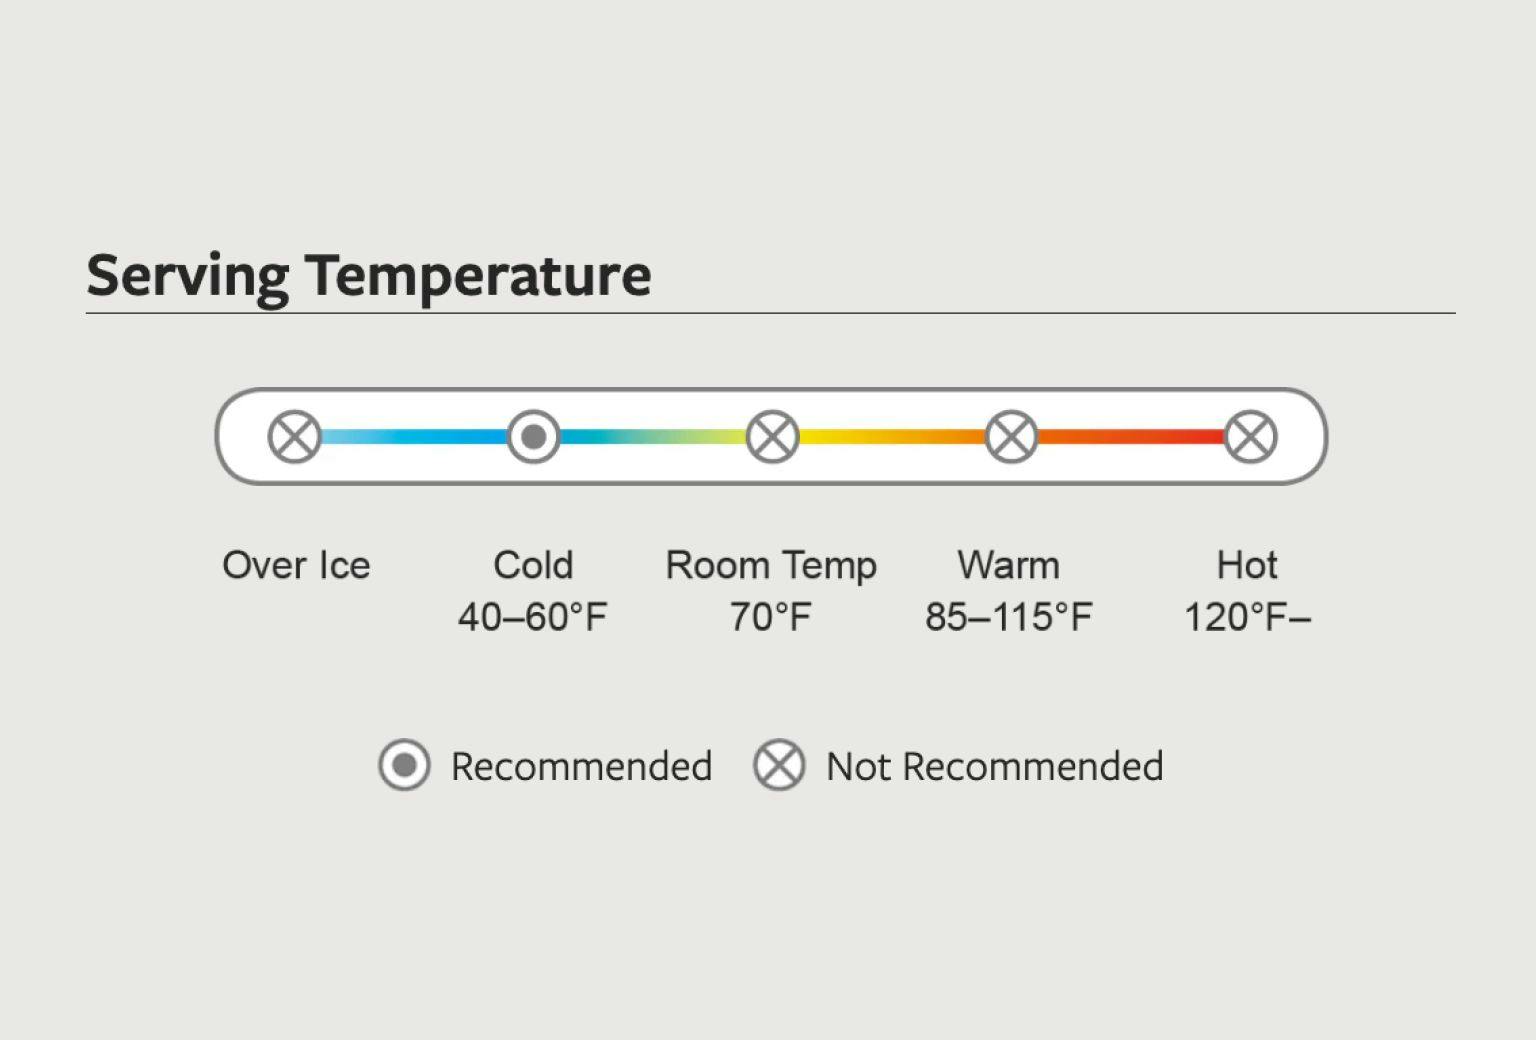 Temperature guidance